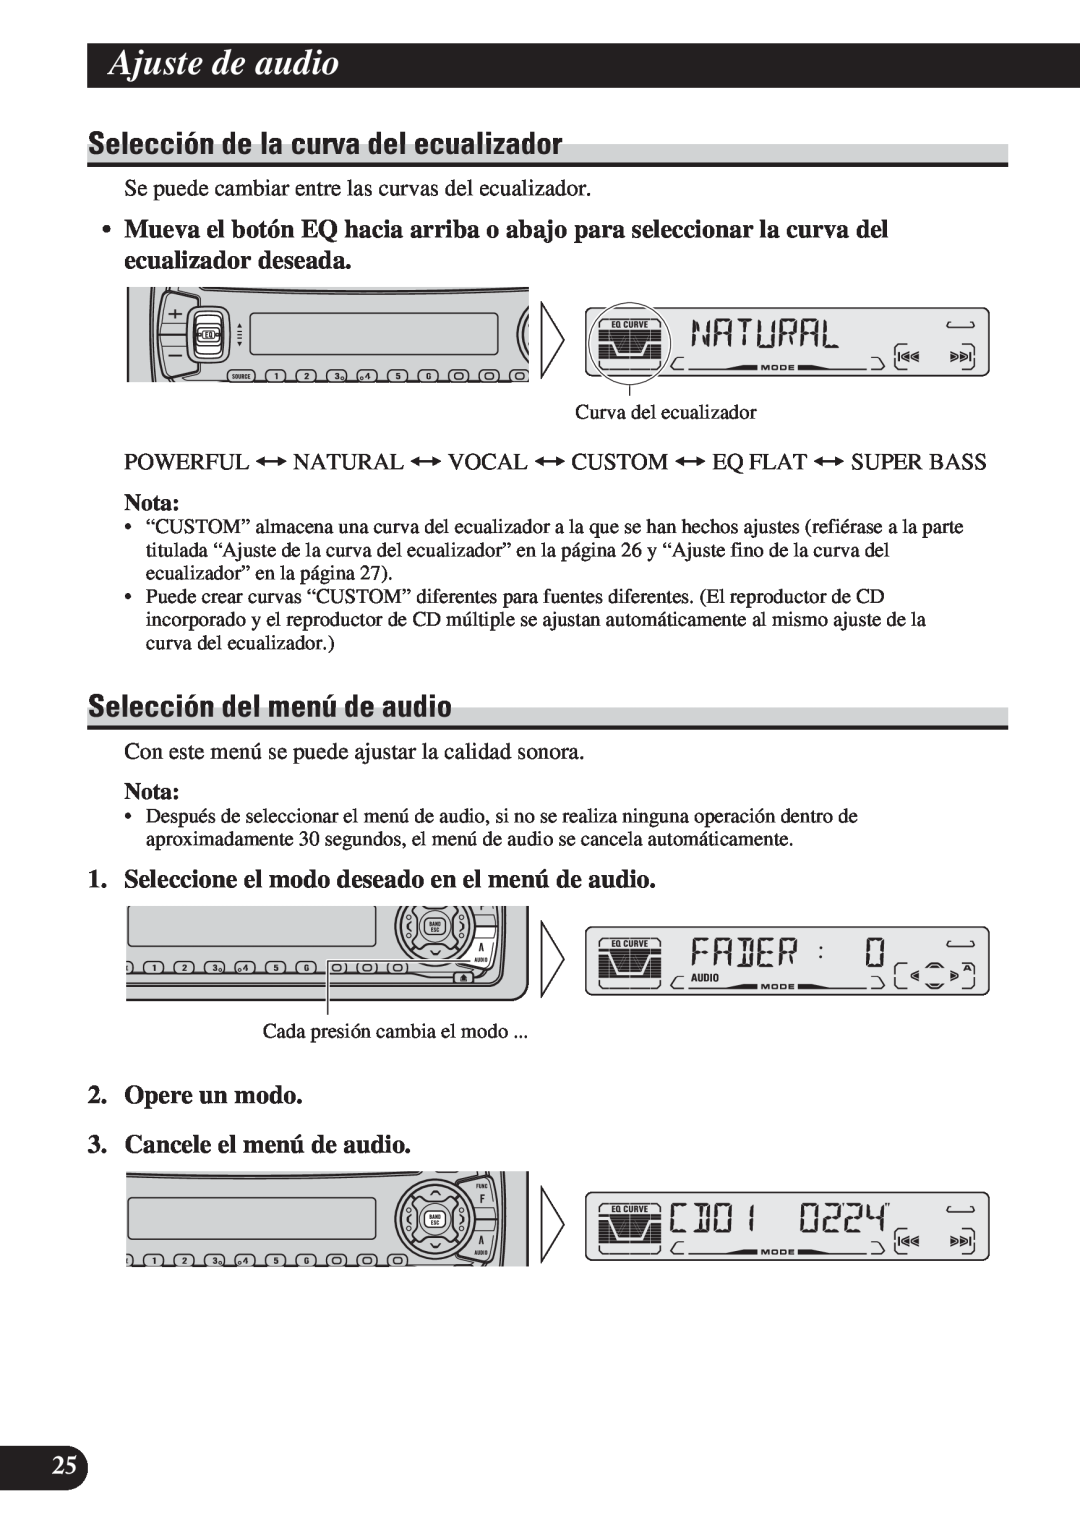 Pioneer DEH-P4150 Ajuste de audio, Selección de la curva del ecualizador, Selección del menú de audio, Nota 